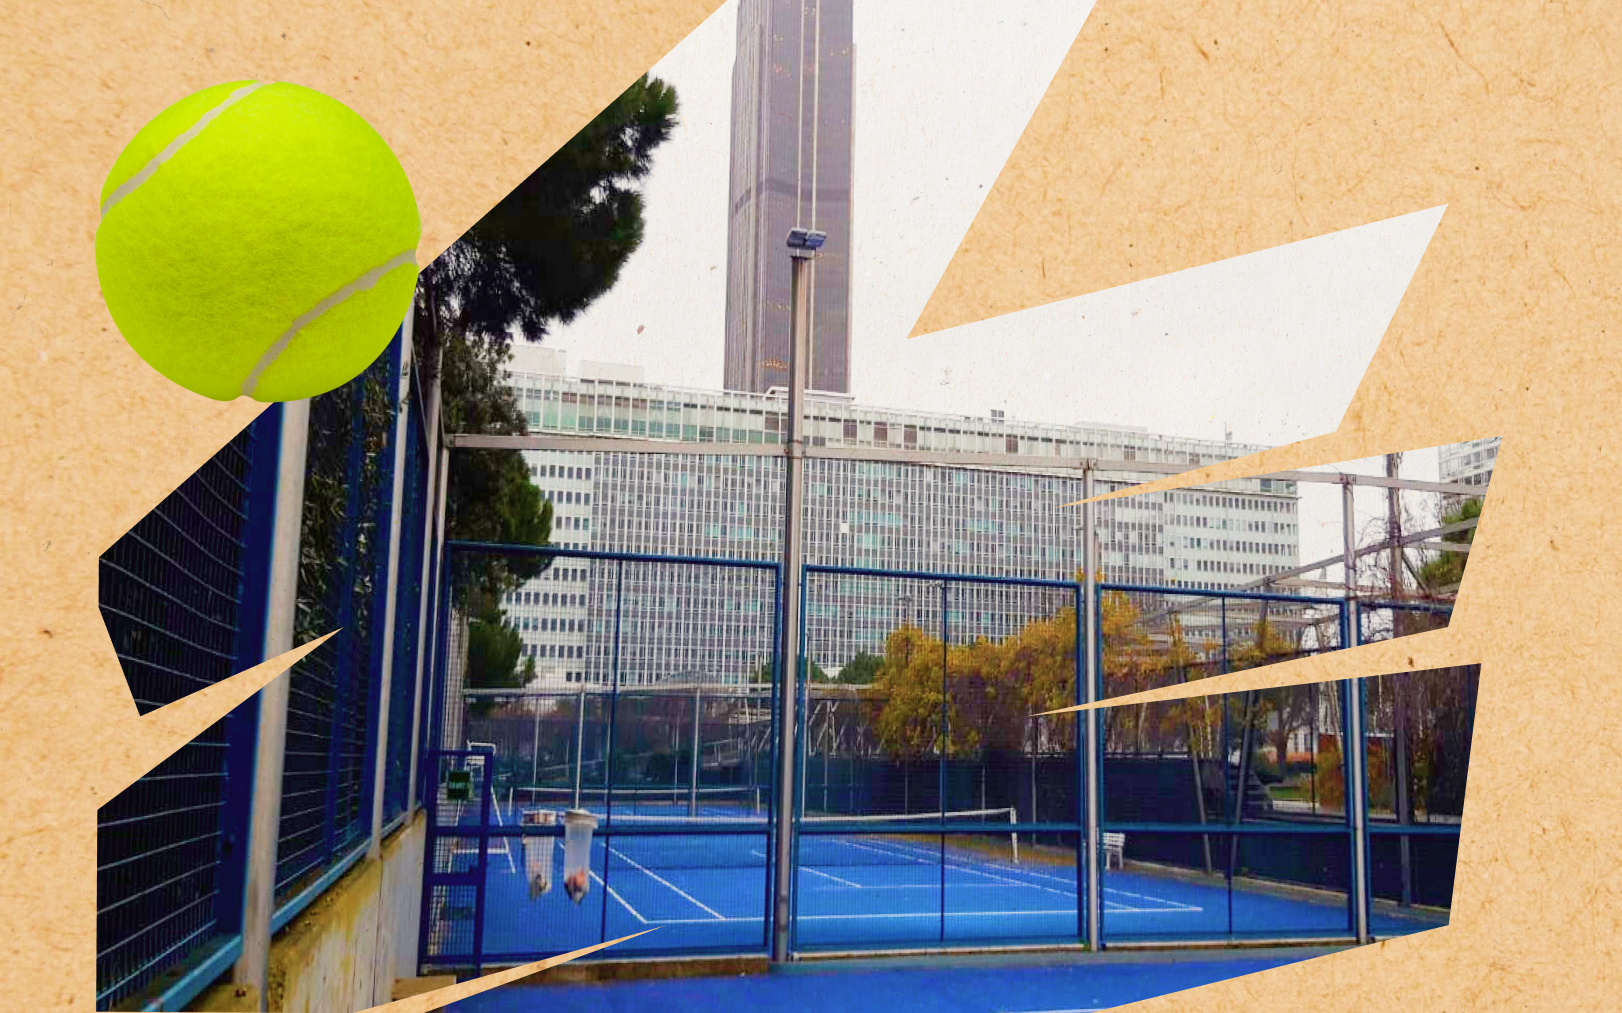 Cinq courts de tennis en plein air se trouvent au jardin Atlantique à Paris : trois en enfilade, disposés dans l’axe des voies ferrées, plus un à chaque extrémité, mais planté perpendiculairement. Le Parisien-DA/Lionel Chami